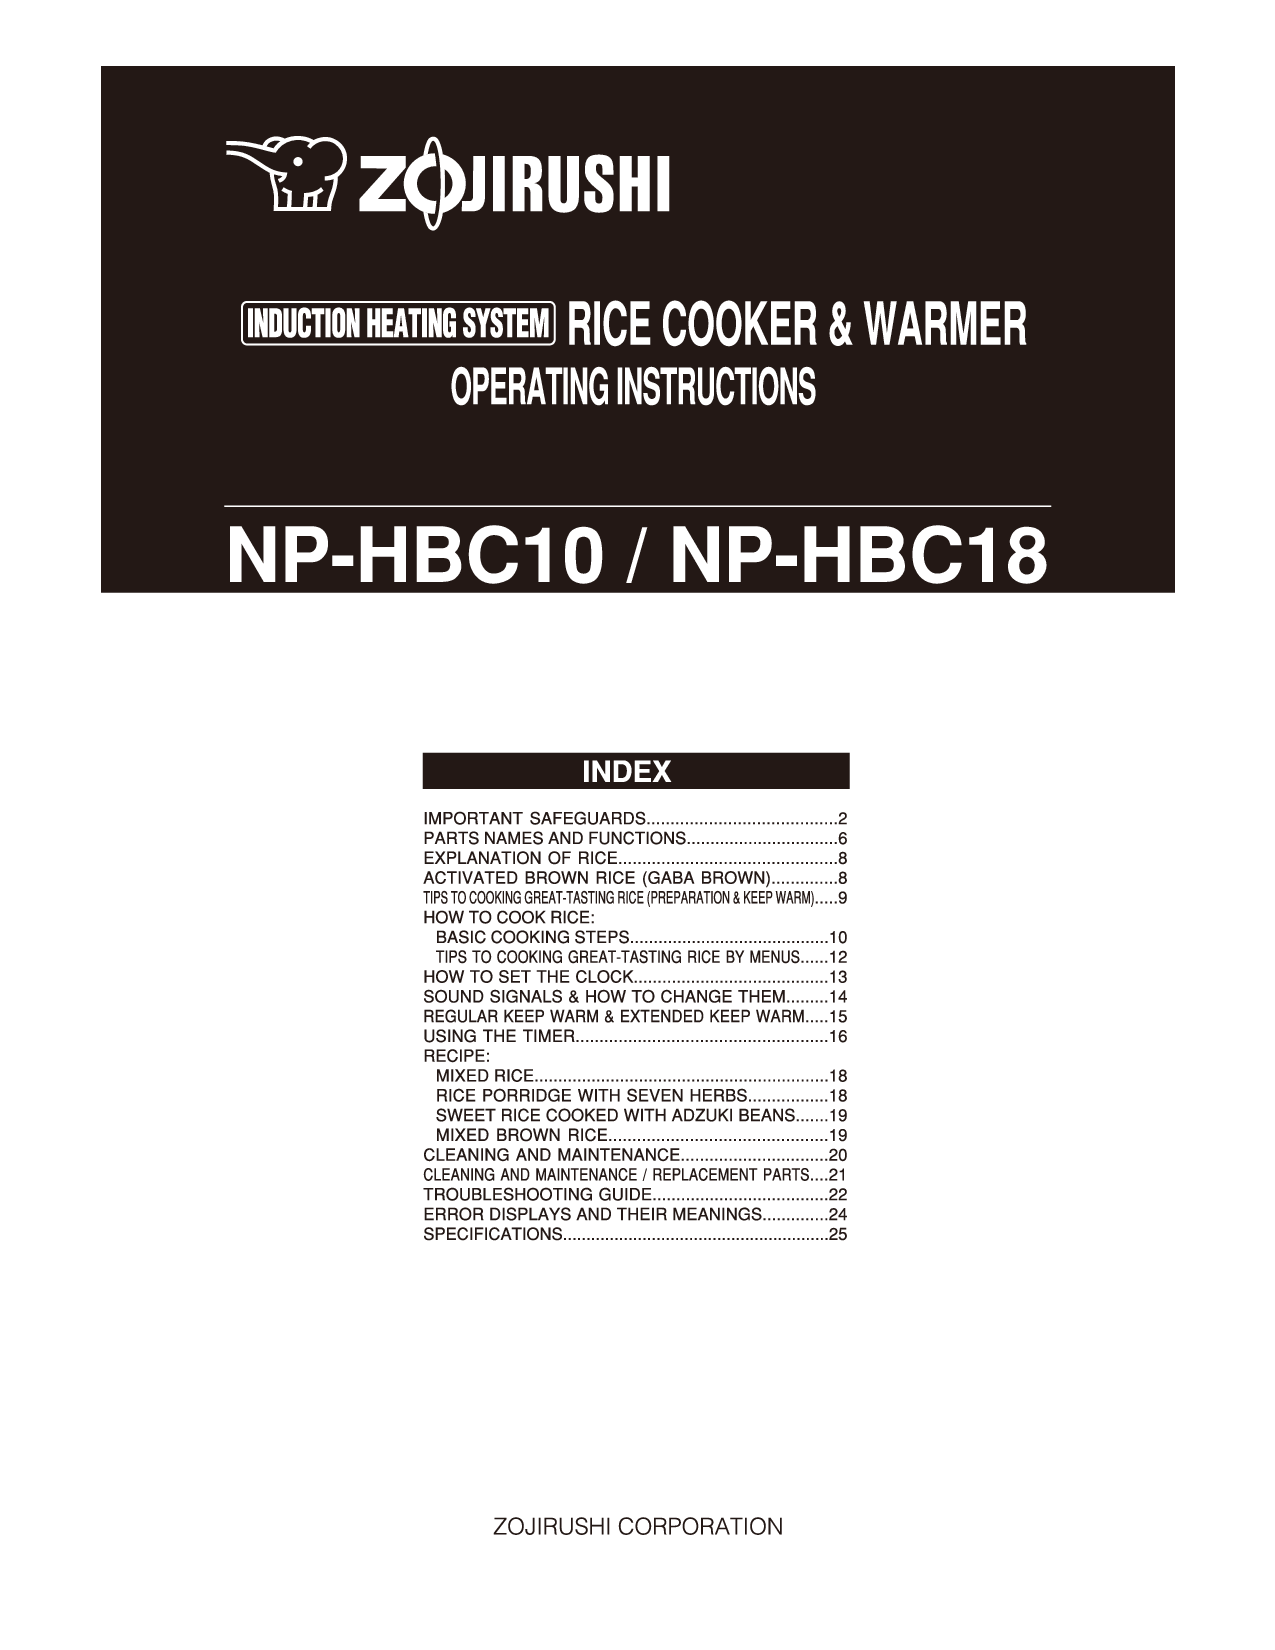 Zojirushi NP-HBC10, NP-HBC18 User Manual